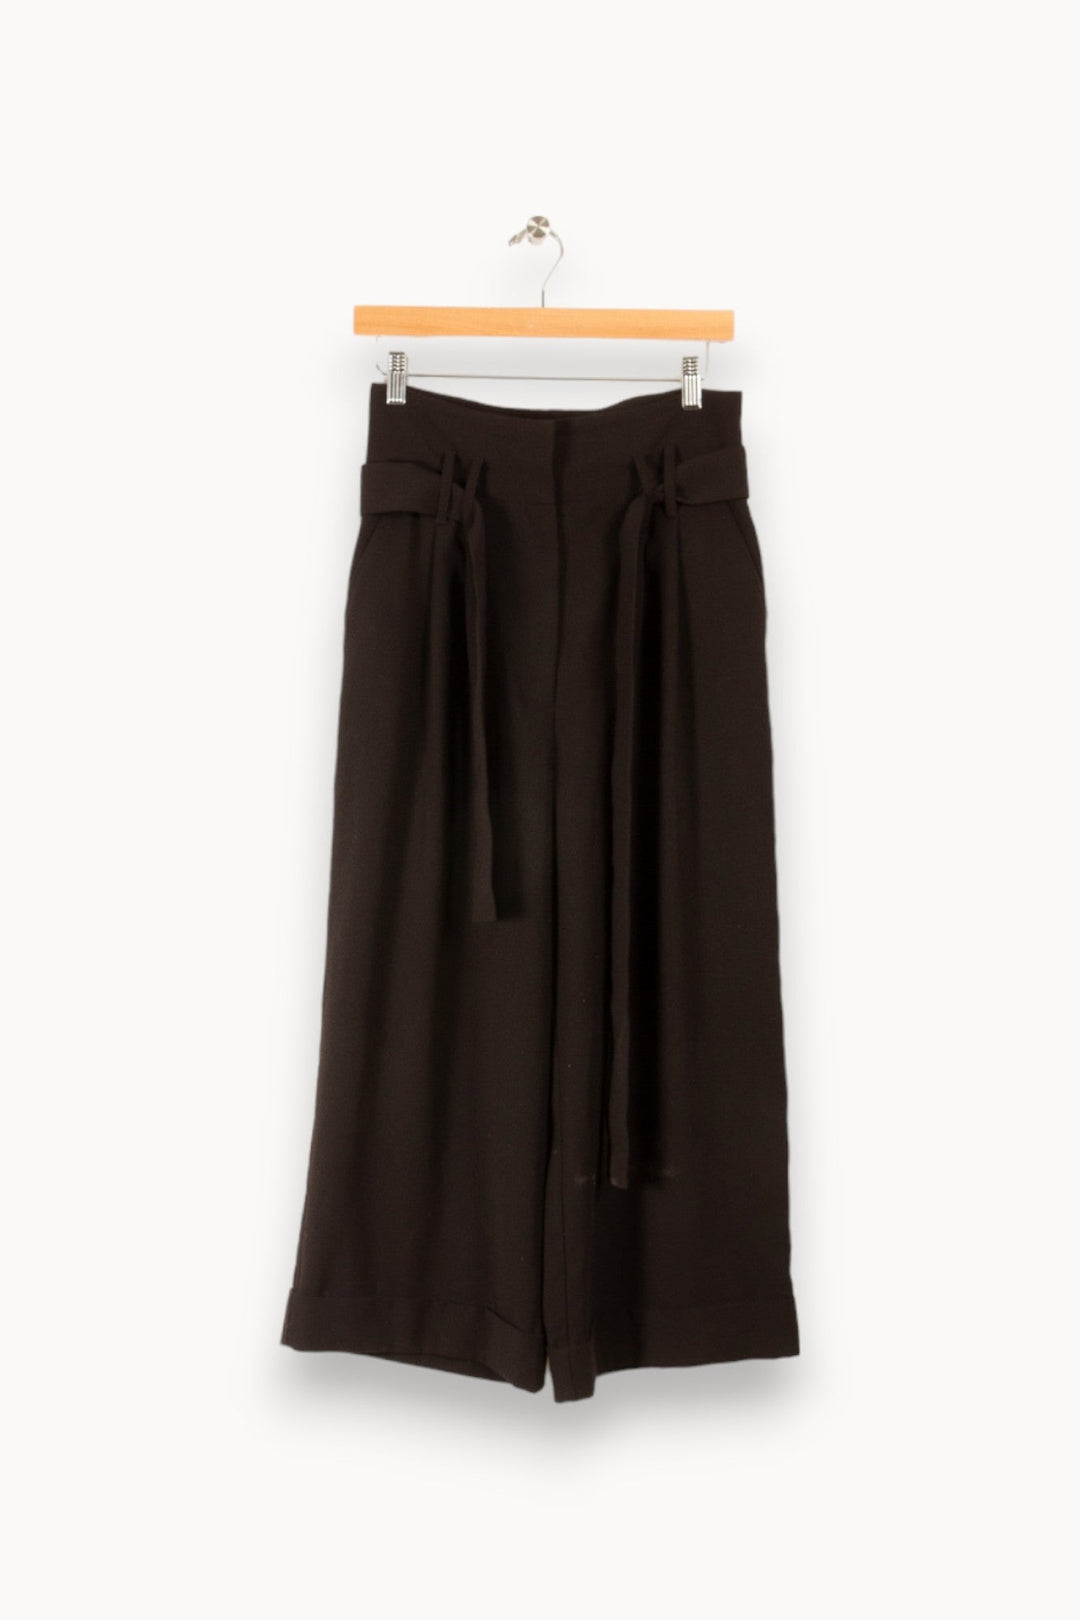 Pantalon noir - S/36